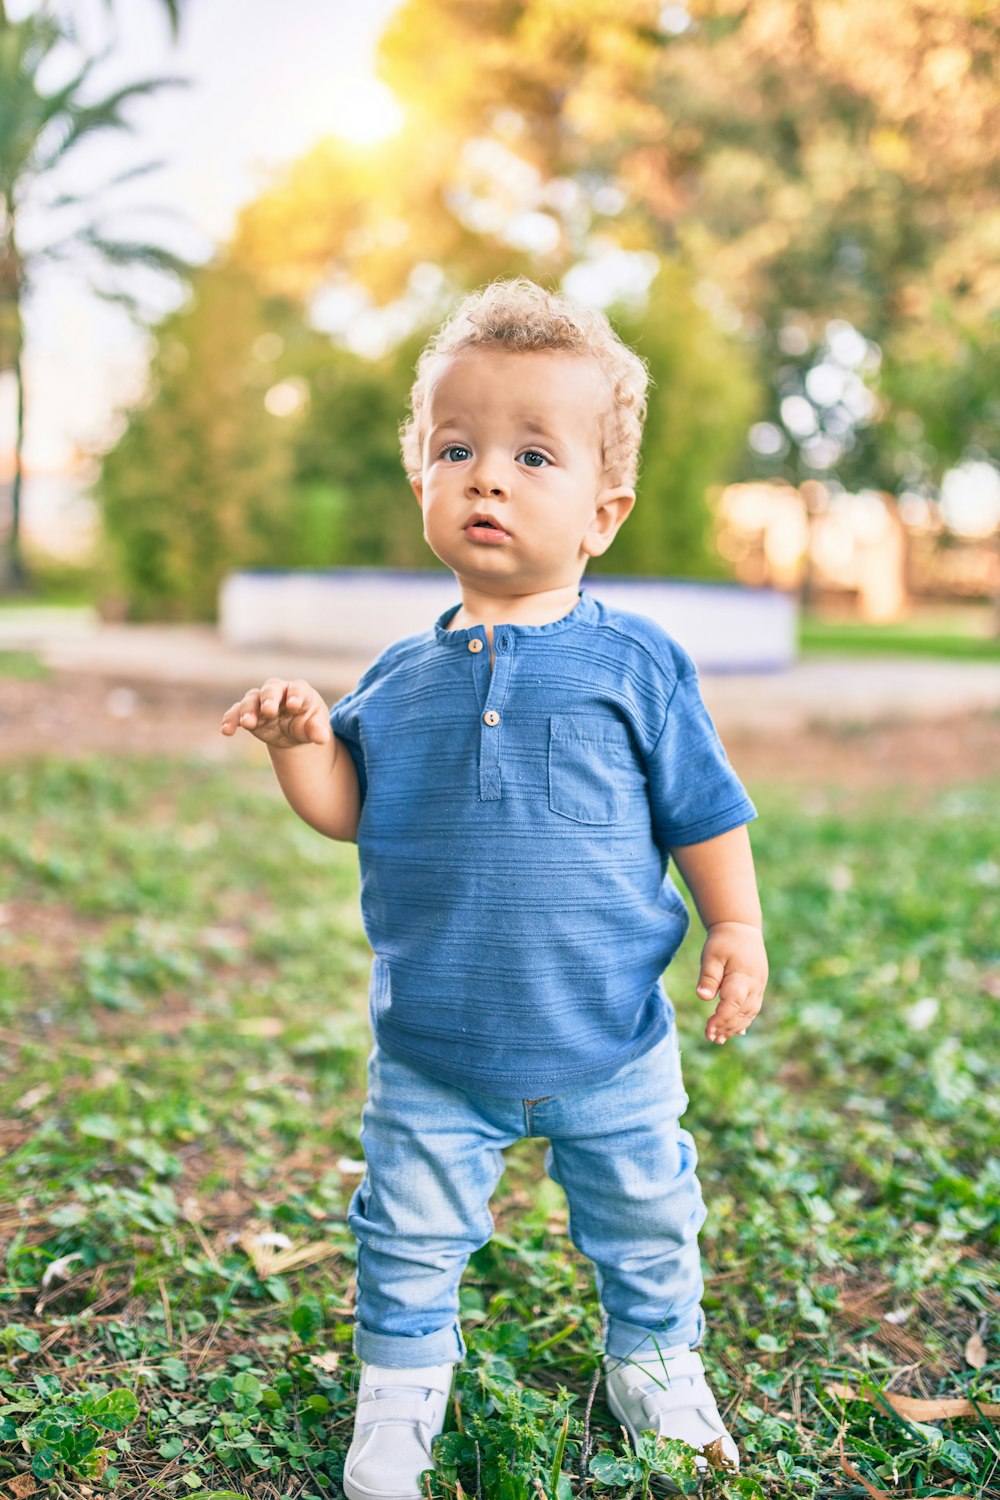 青いポロシャツと青いデニムのショートパンツを着た男の子が昼間、緑の芝生の野原に立っています